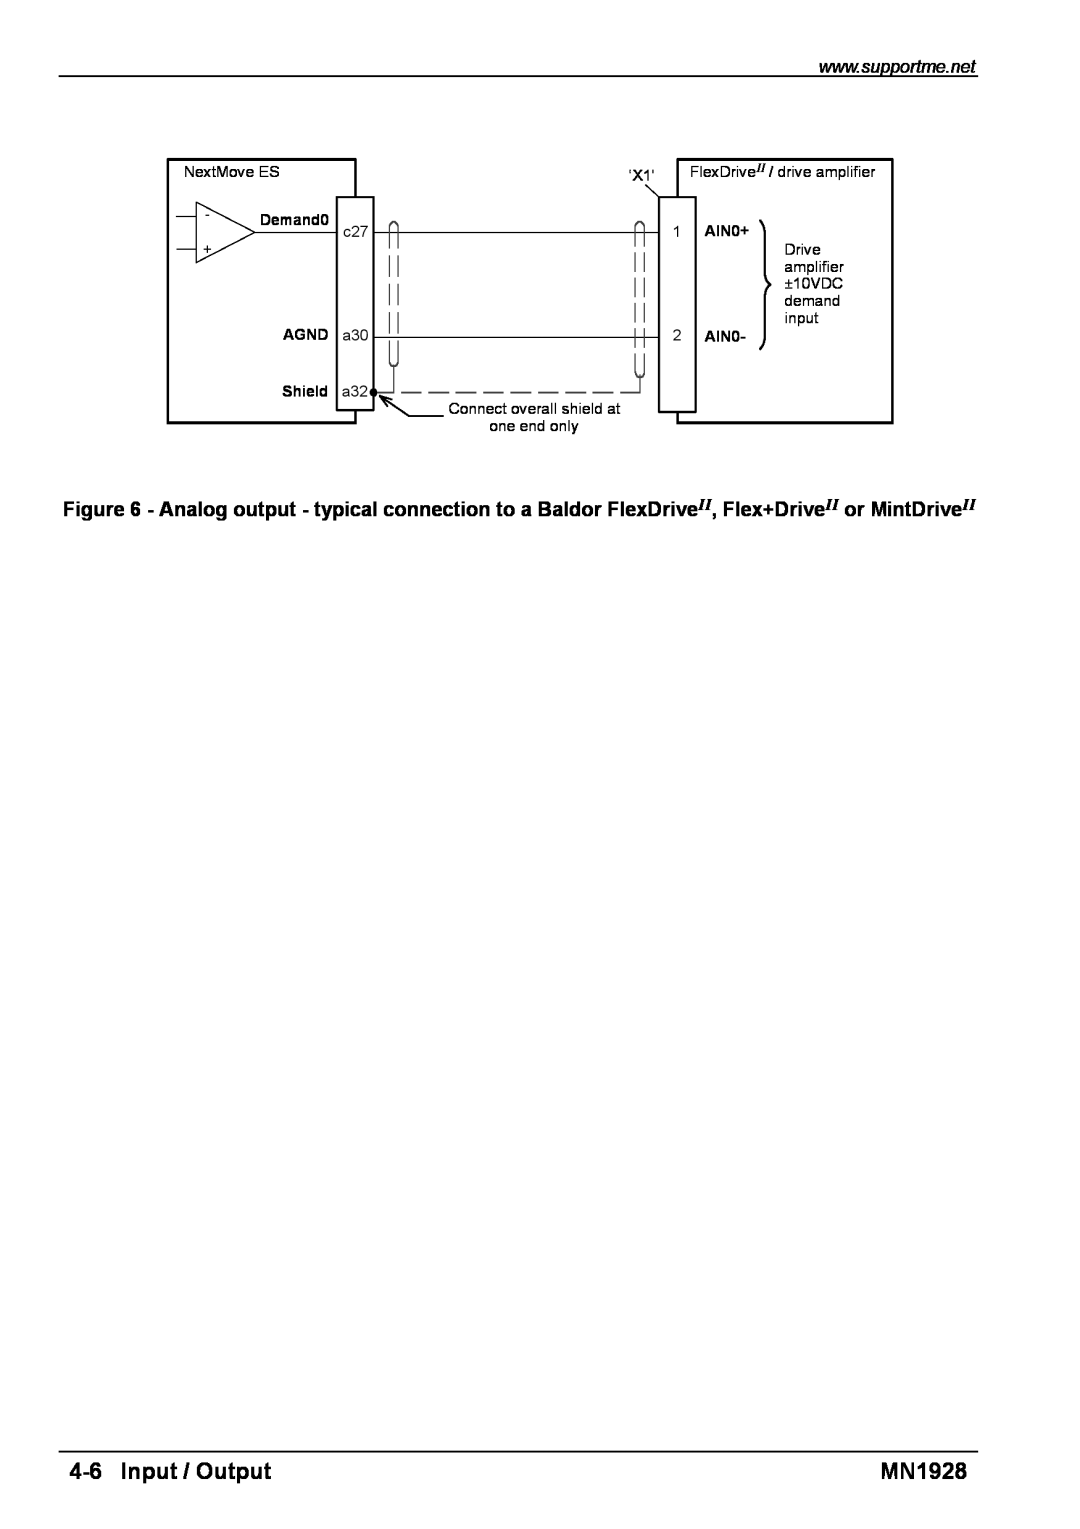 Baldor MN1928 installation manual Input / Output 